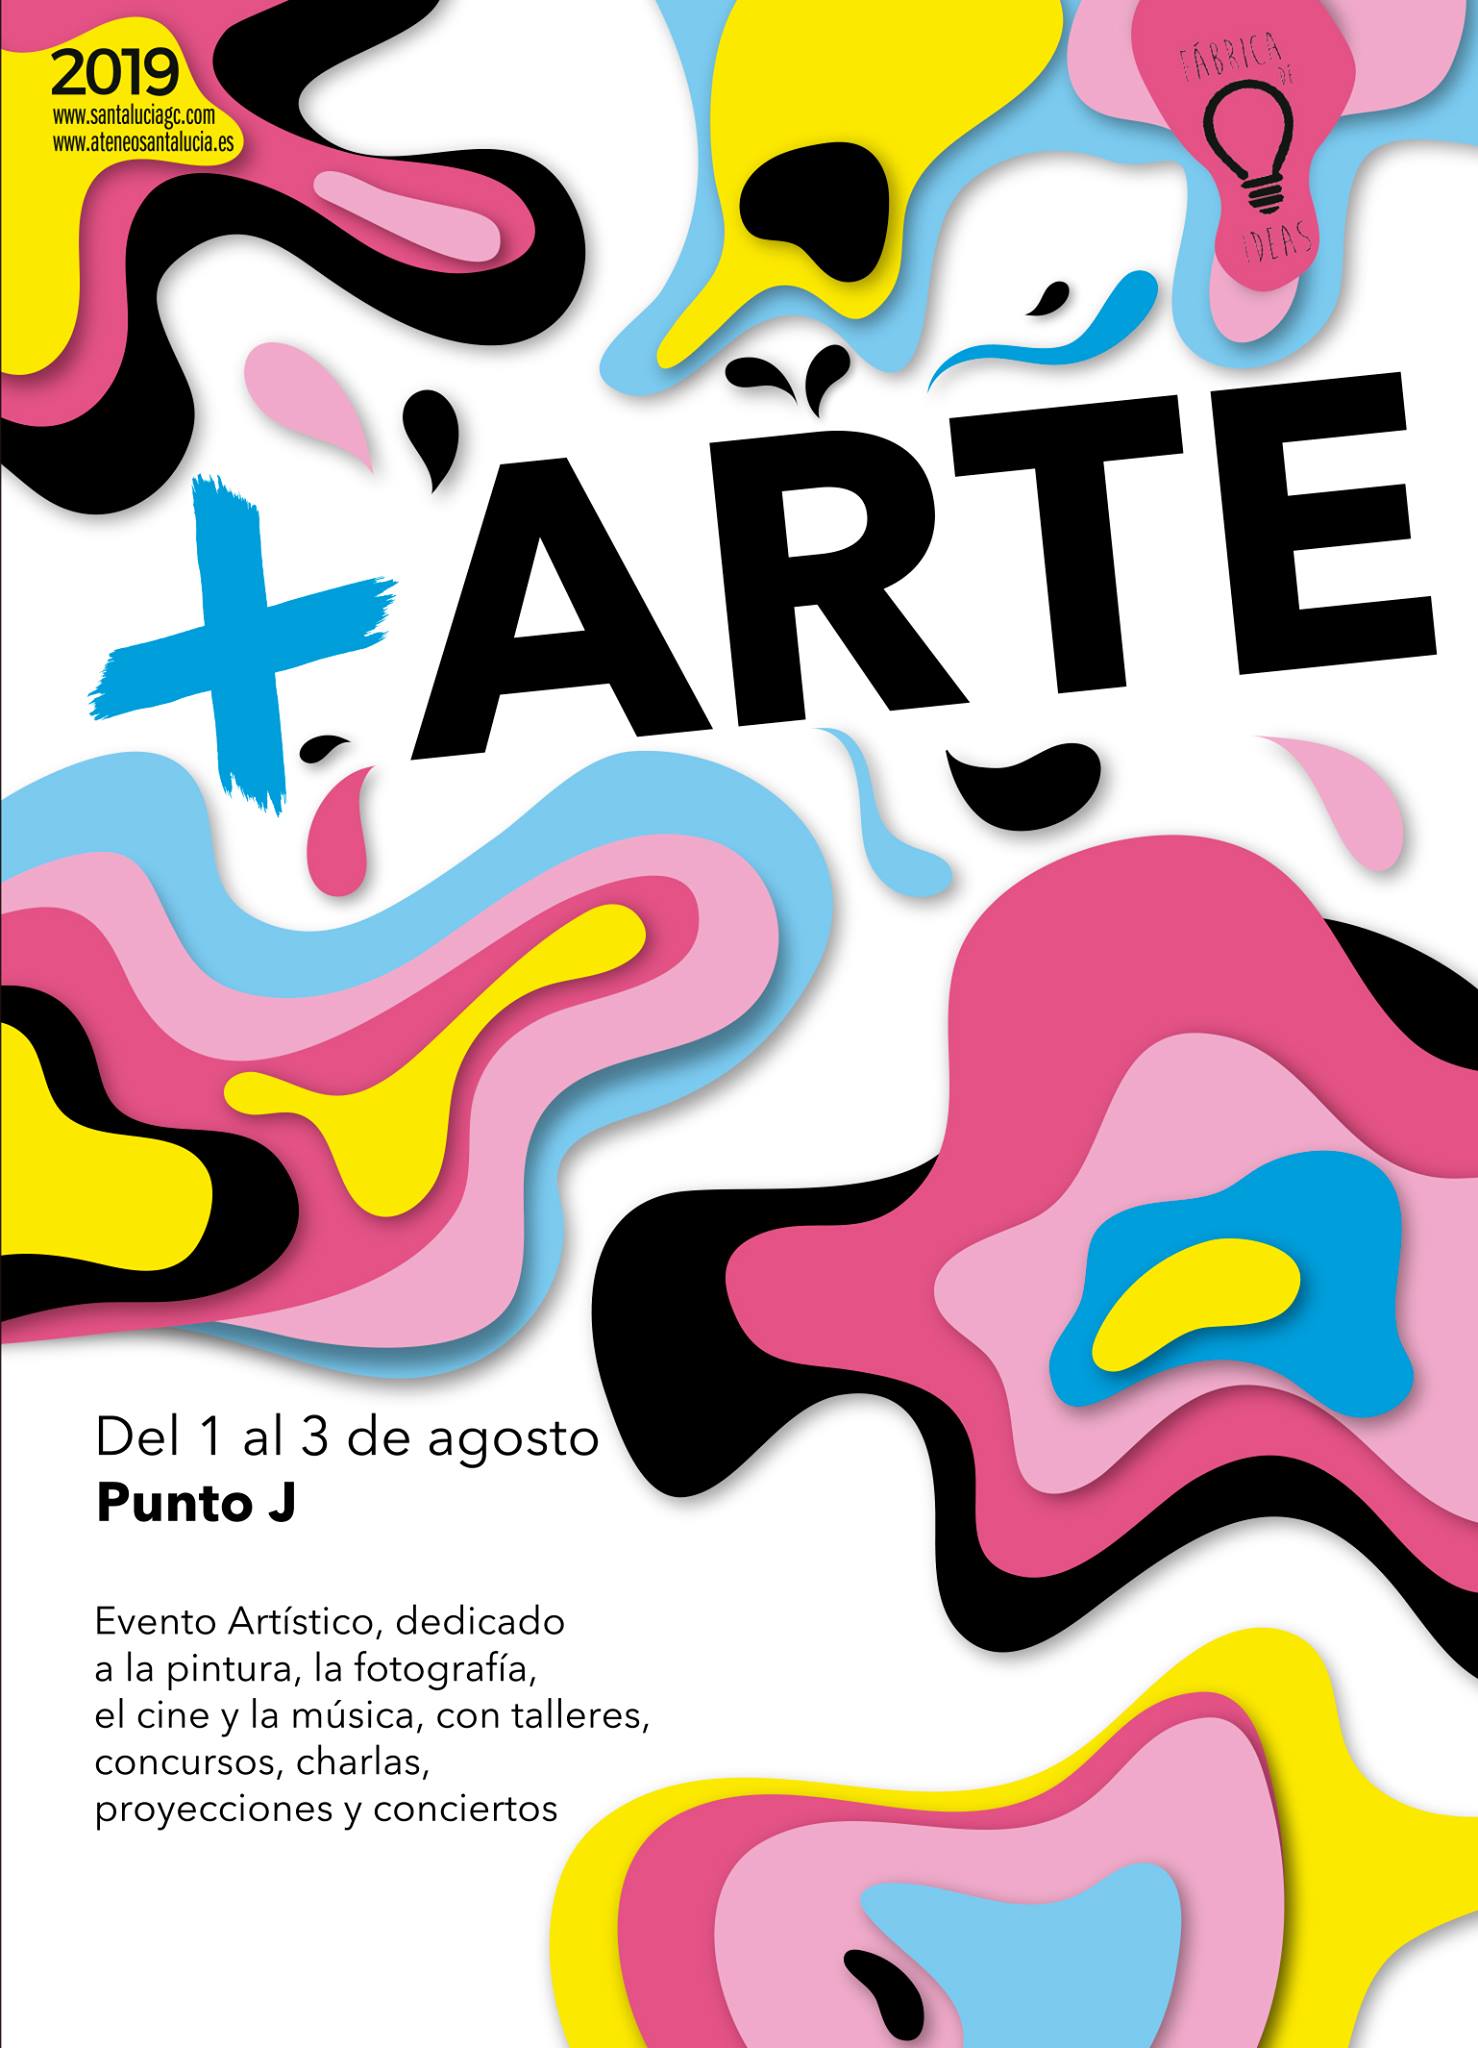 El Festival Artístico y Cultural para jóvenes + Arte mostrará en el Punto J. el talento artístico de la juventud de Santa Lucía